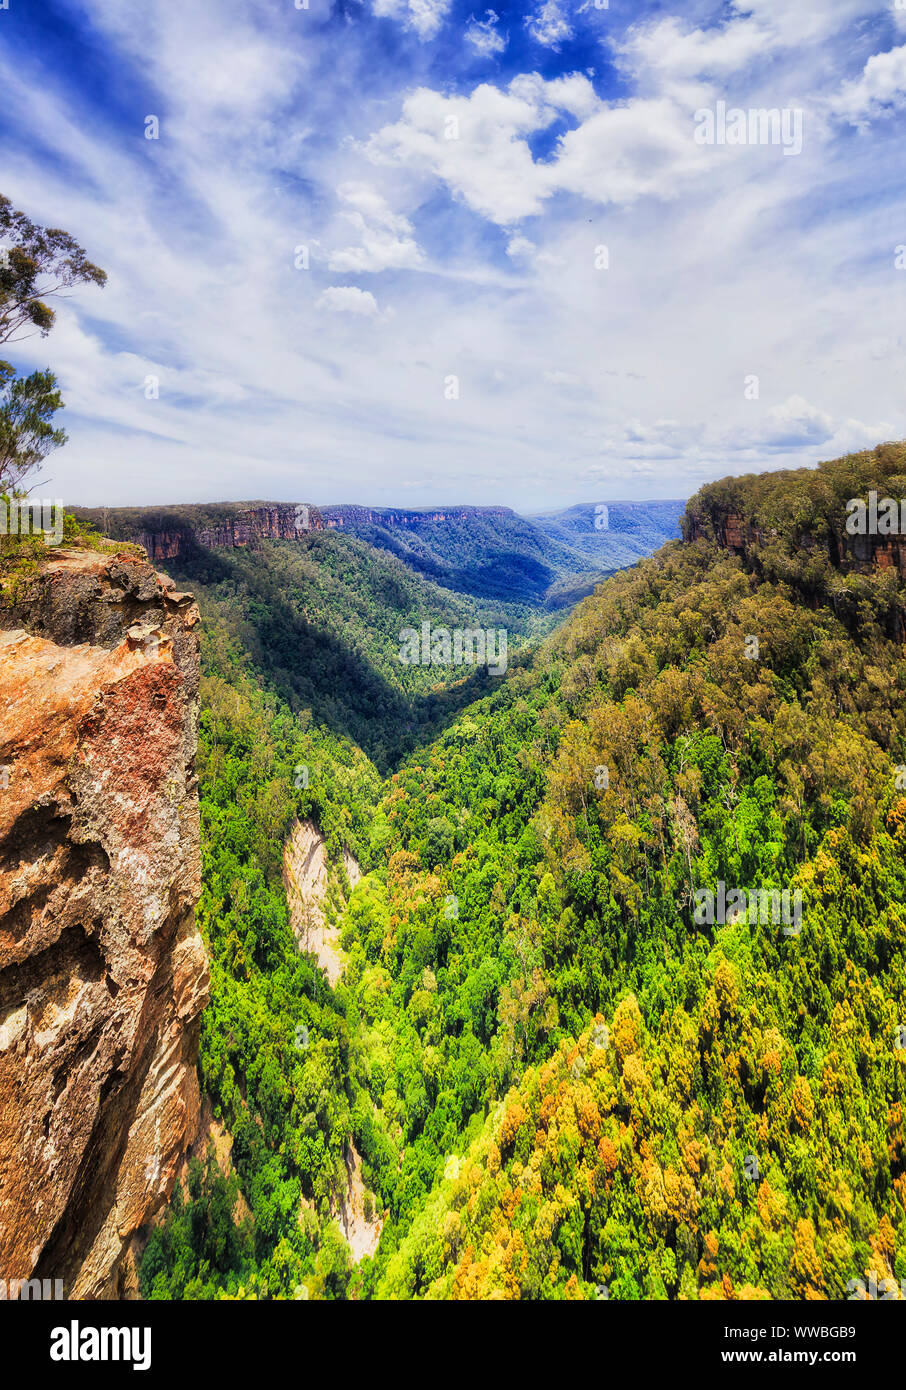 Yarrunga profundo valle entre montañas de piedra arenisca en la Gran Cordillera Divisoria de Australia en un día soleado bajo un cielo azul con frondosos bosques de árboles de goma arábiga. Foto de stock